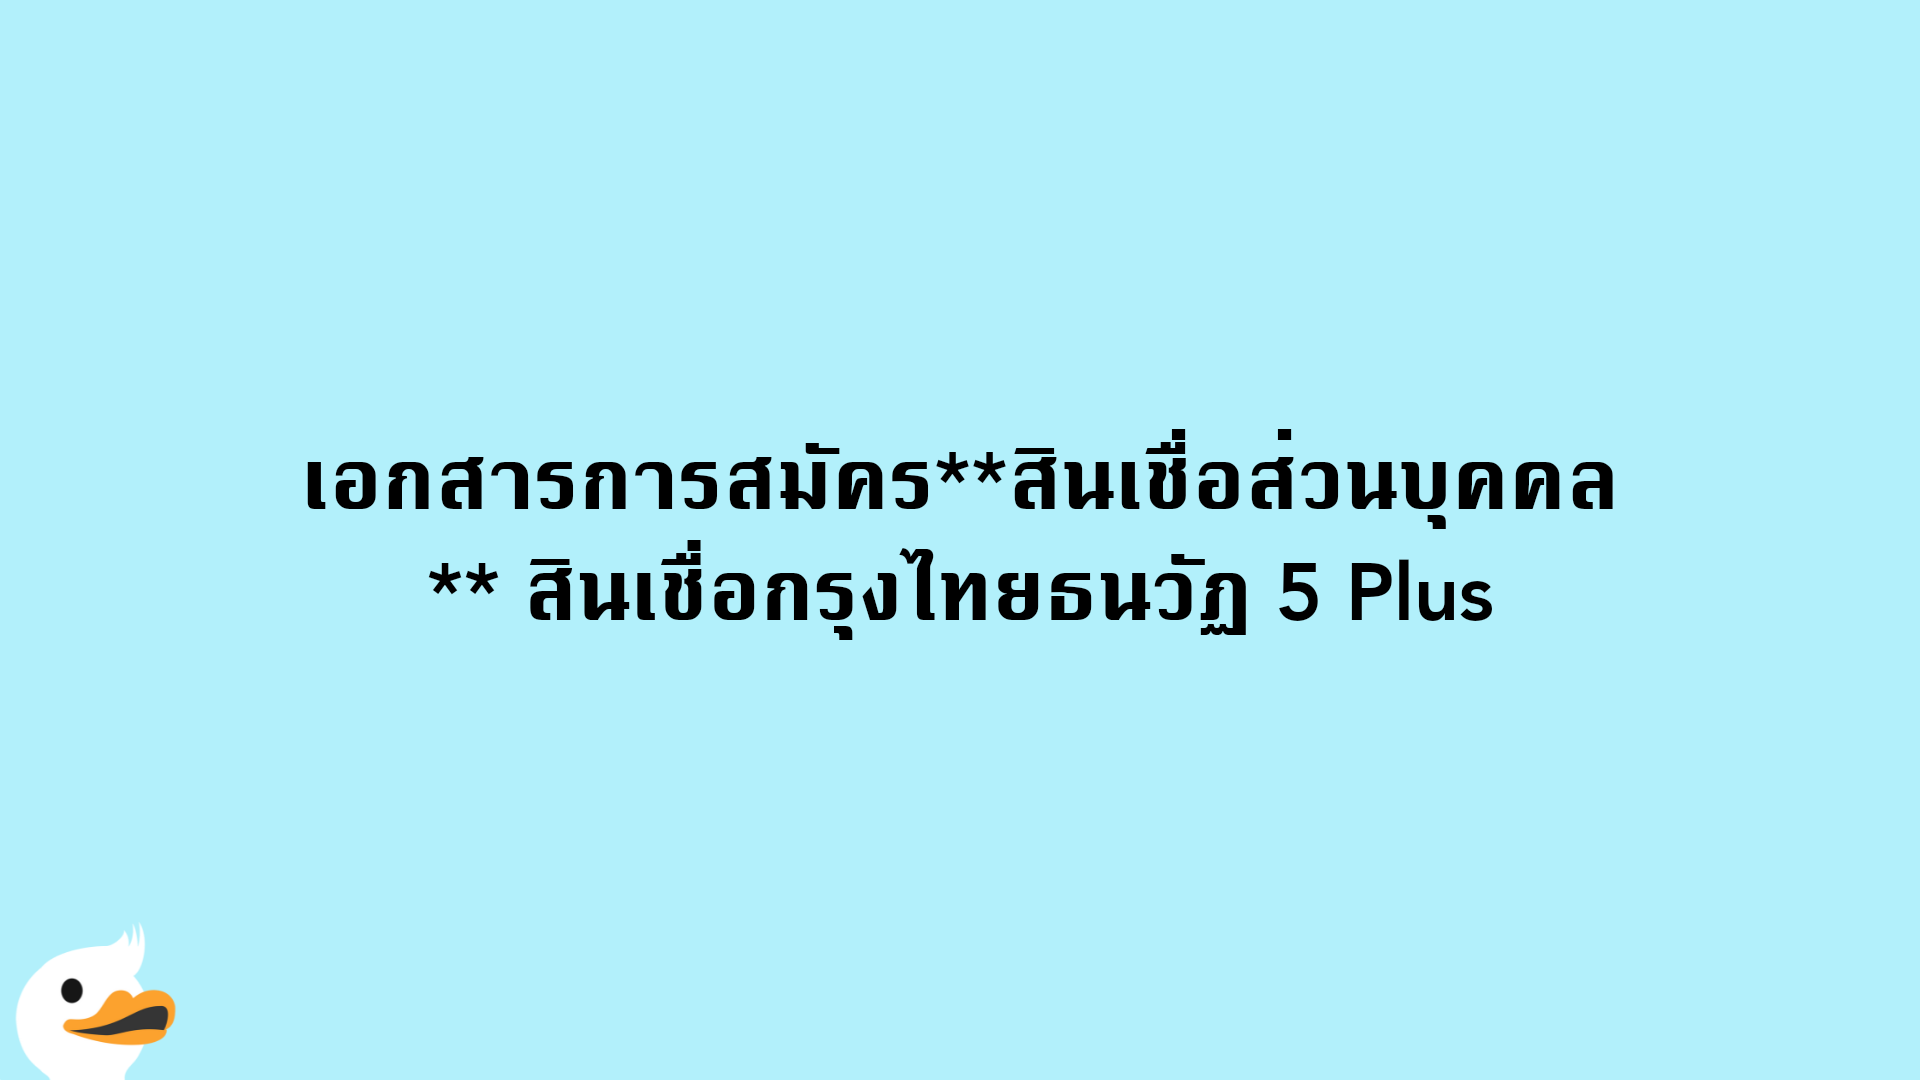 เอกสารการสมัครสินเชื่อส่วนบุคคล สินเชื่อกรุงไทยธนวัฏ 5 Plus